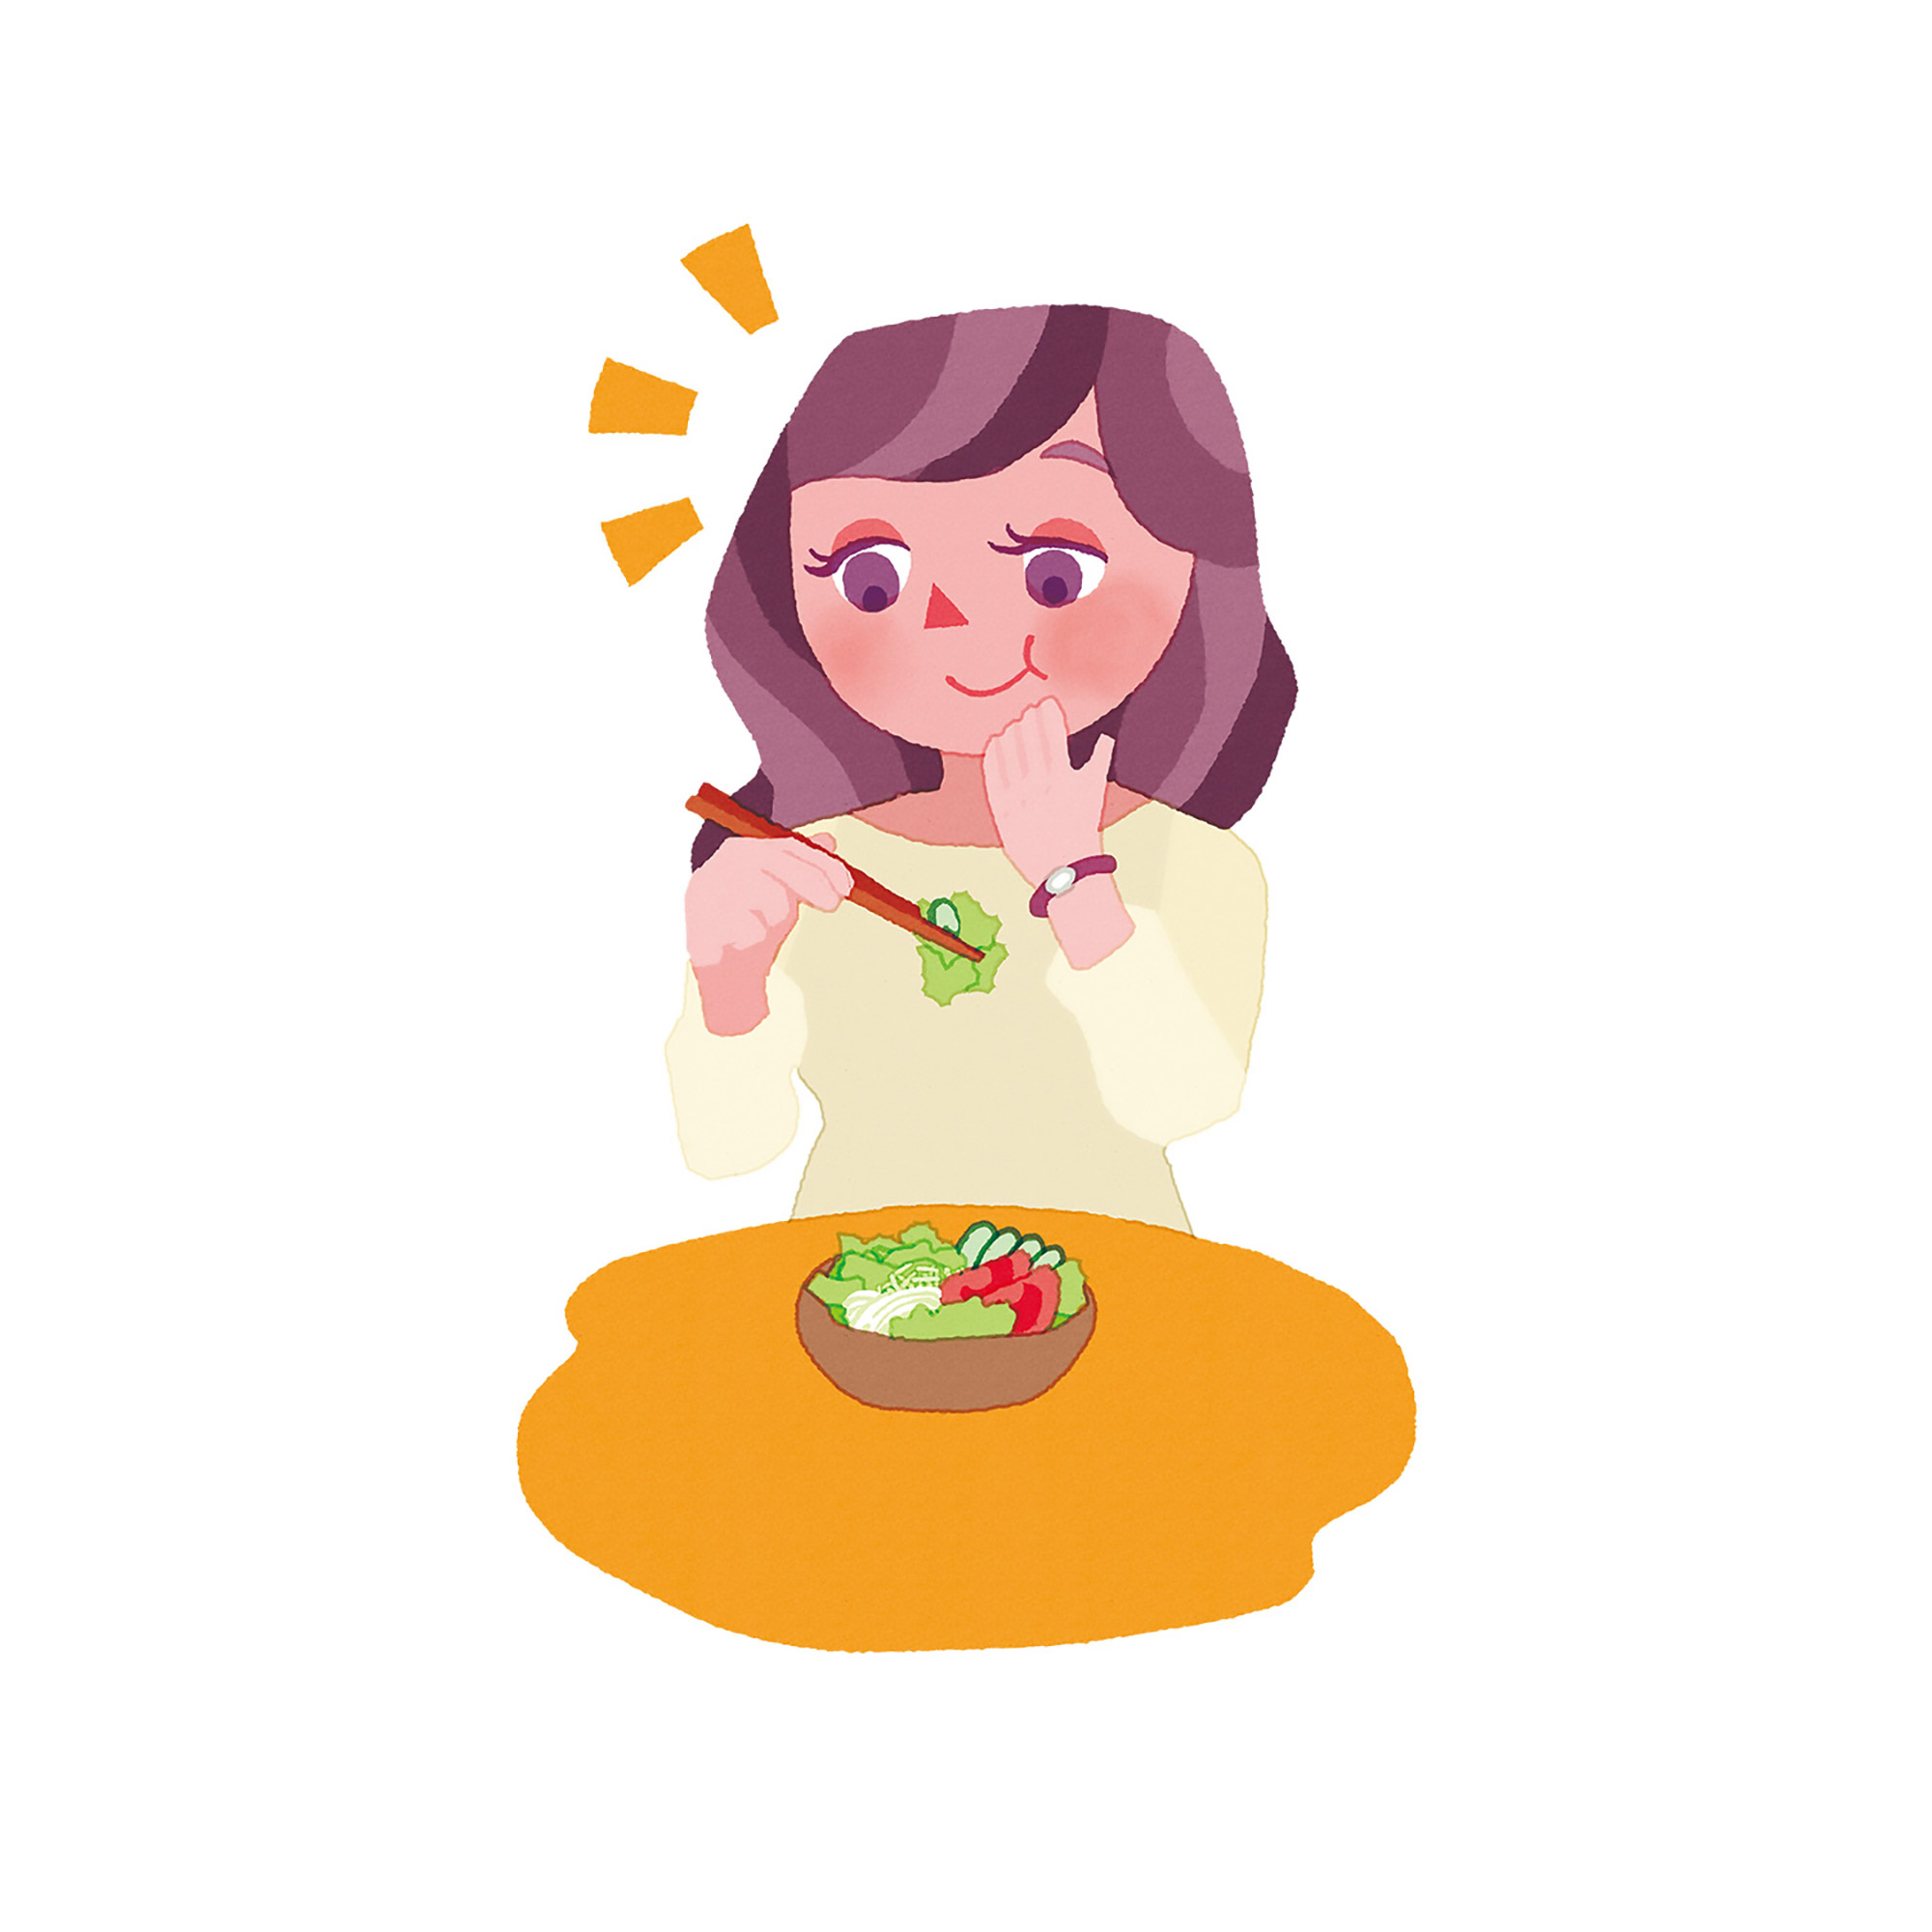 ヤマキ サラダ麺つゆ【ランディングページ】イラスト